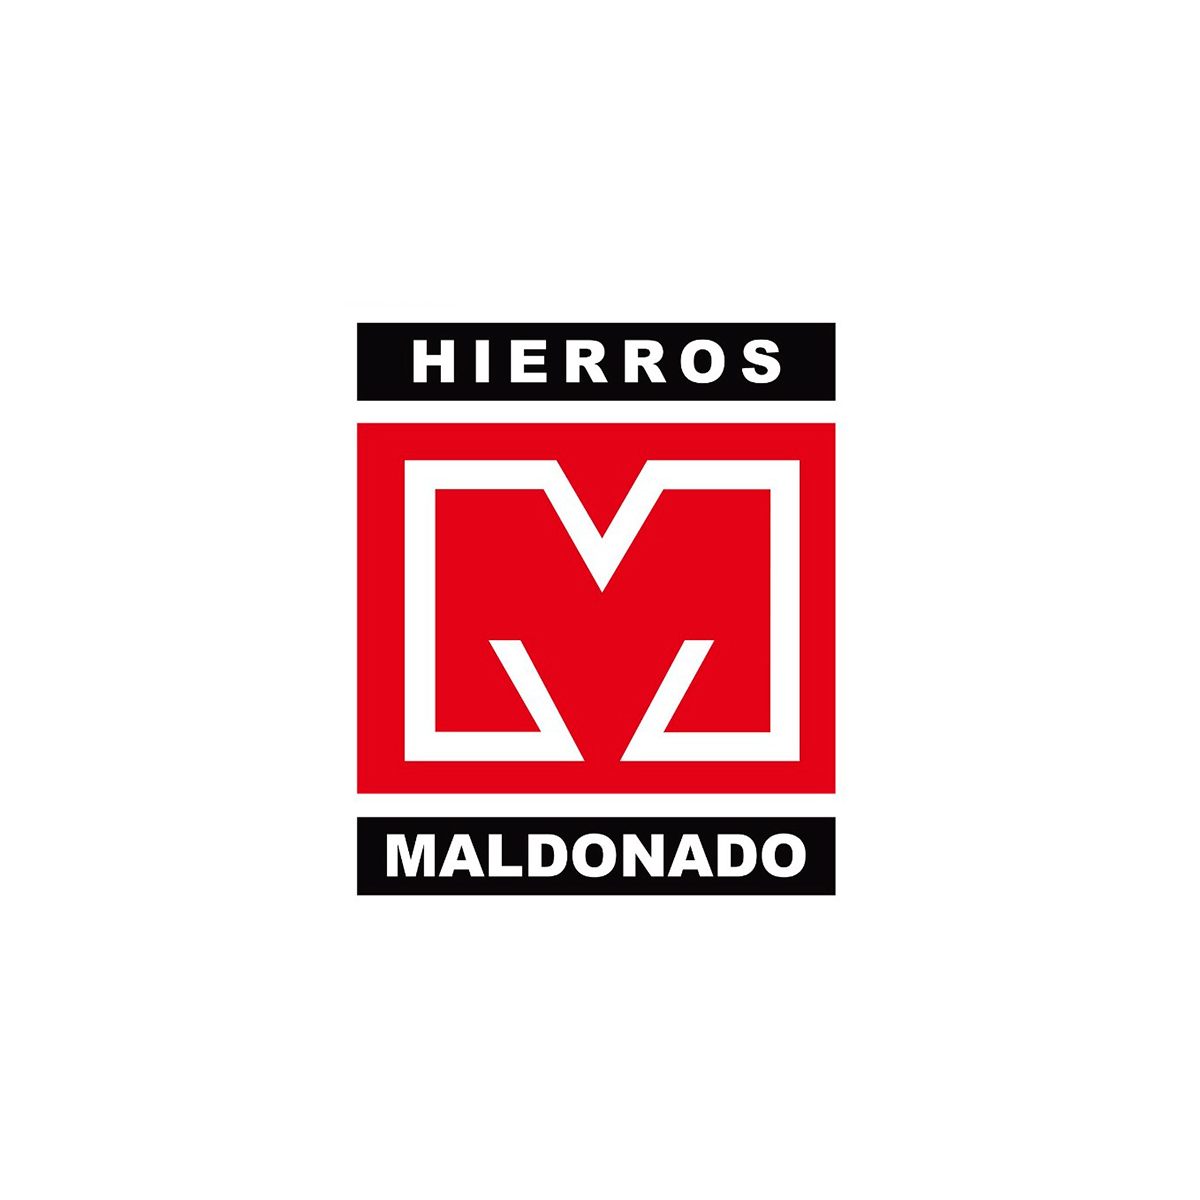 HIERROS MALDONADO